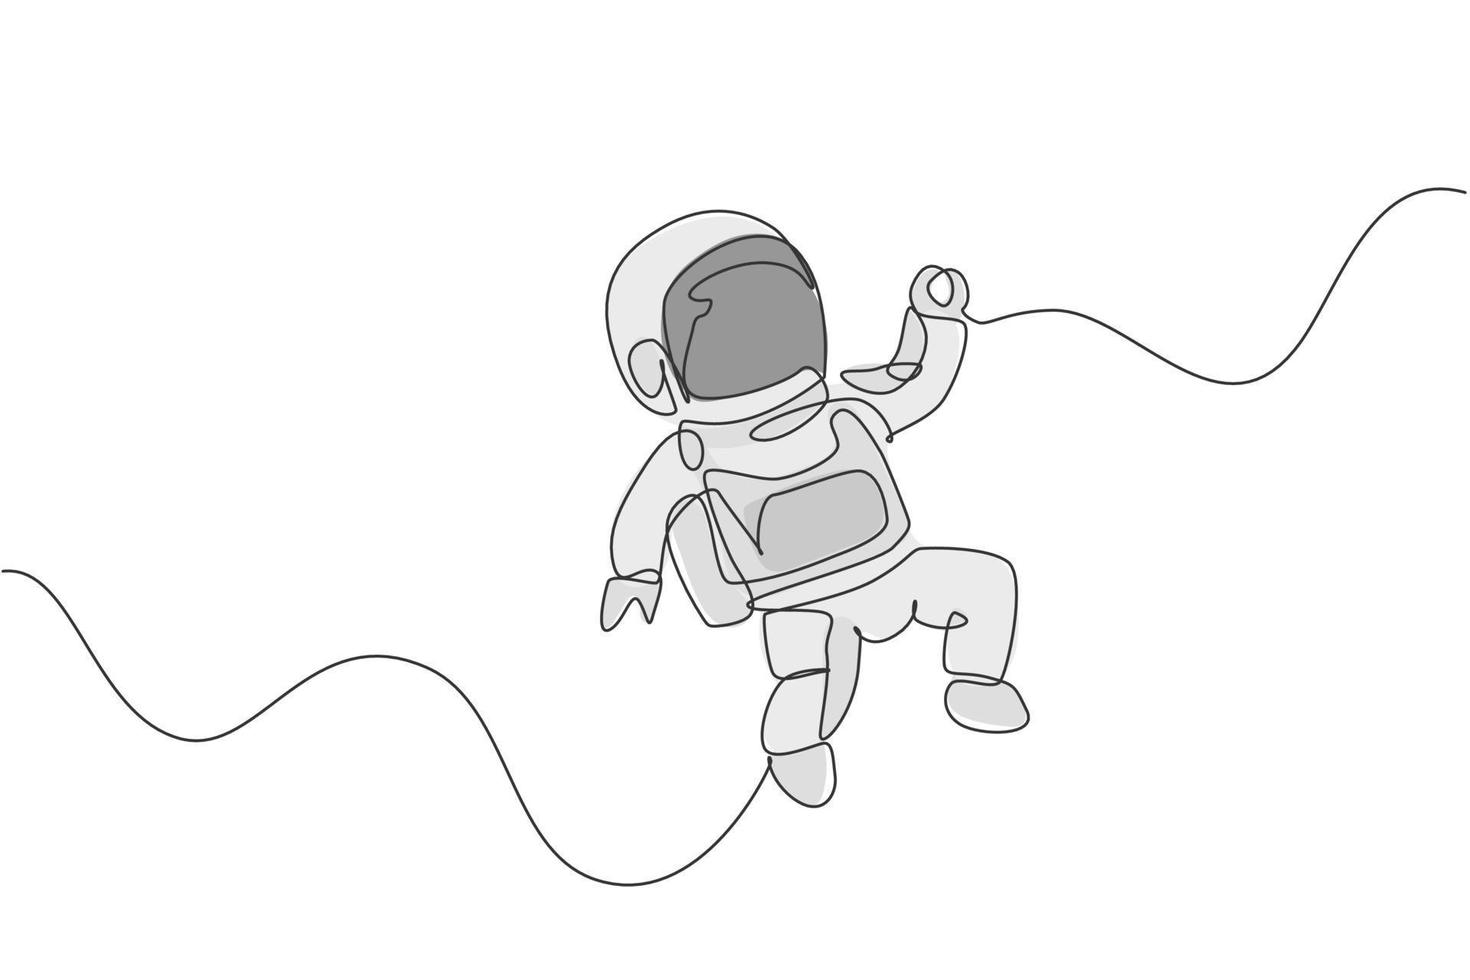 Eine einzige Strichzeichnung eines jungen Astronauten im Raumanzug, der im Weltraum fliegt, Vektorgrafik-Grafik. Spaceman Abenteuer galaktisches Weltraumkonzept. modernes Design mit durchgehender Linienführung vektor